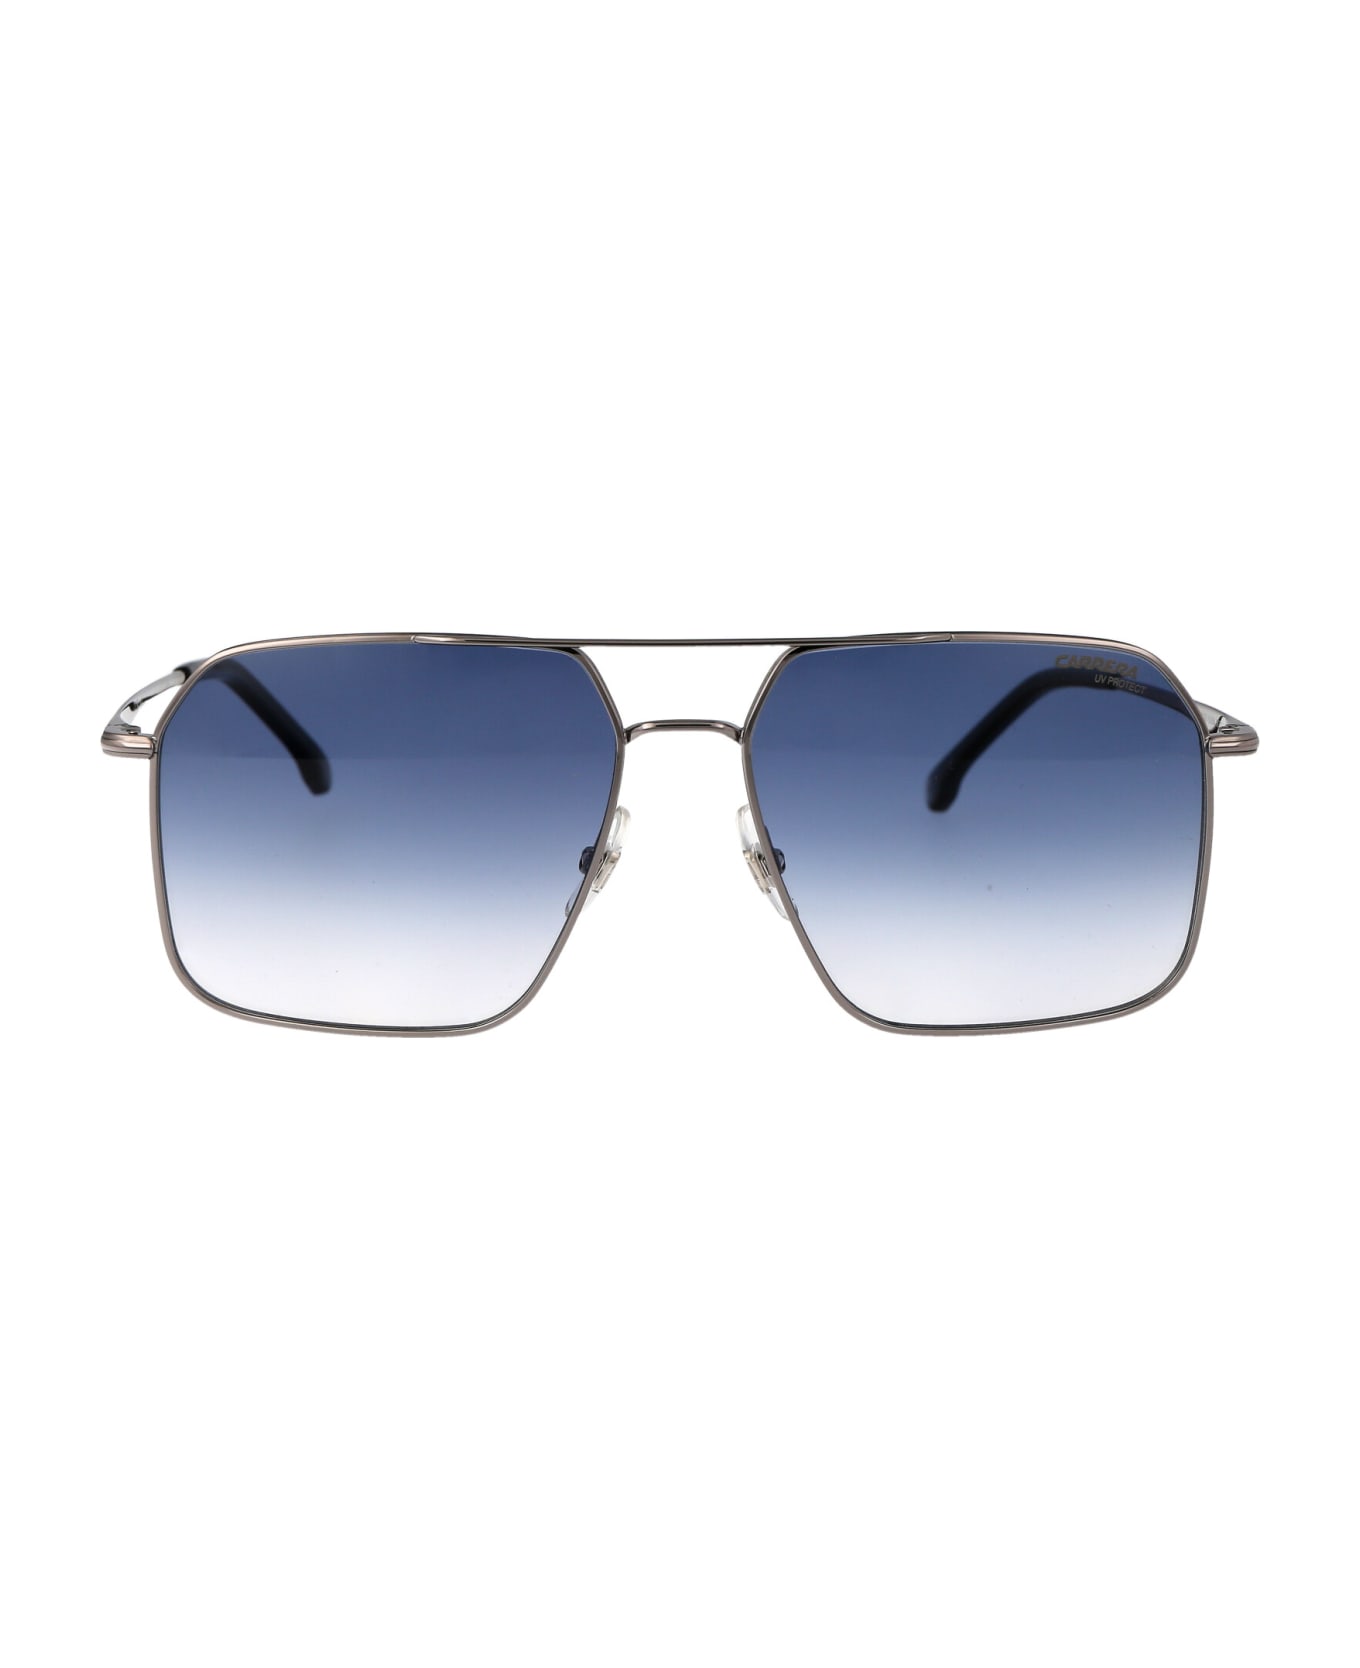 Carrera 333/s Sunglasses - 6LB08 RUTHENIUM サングラス